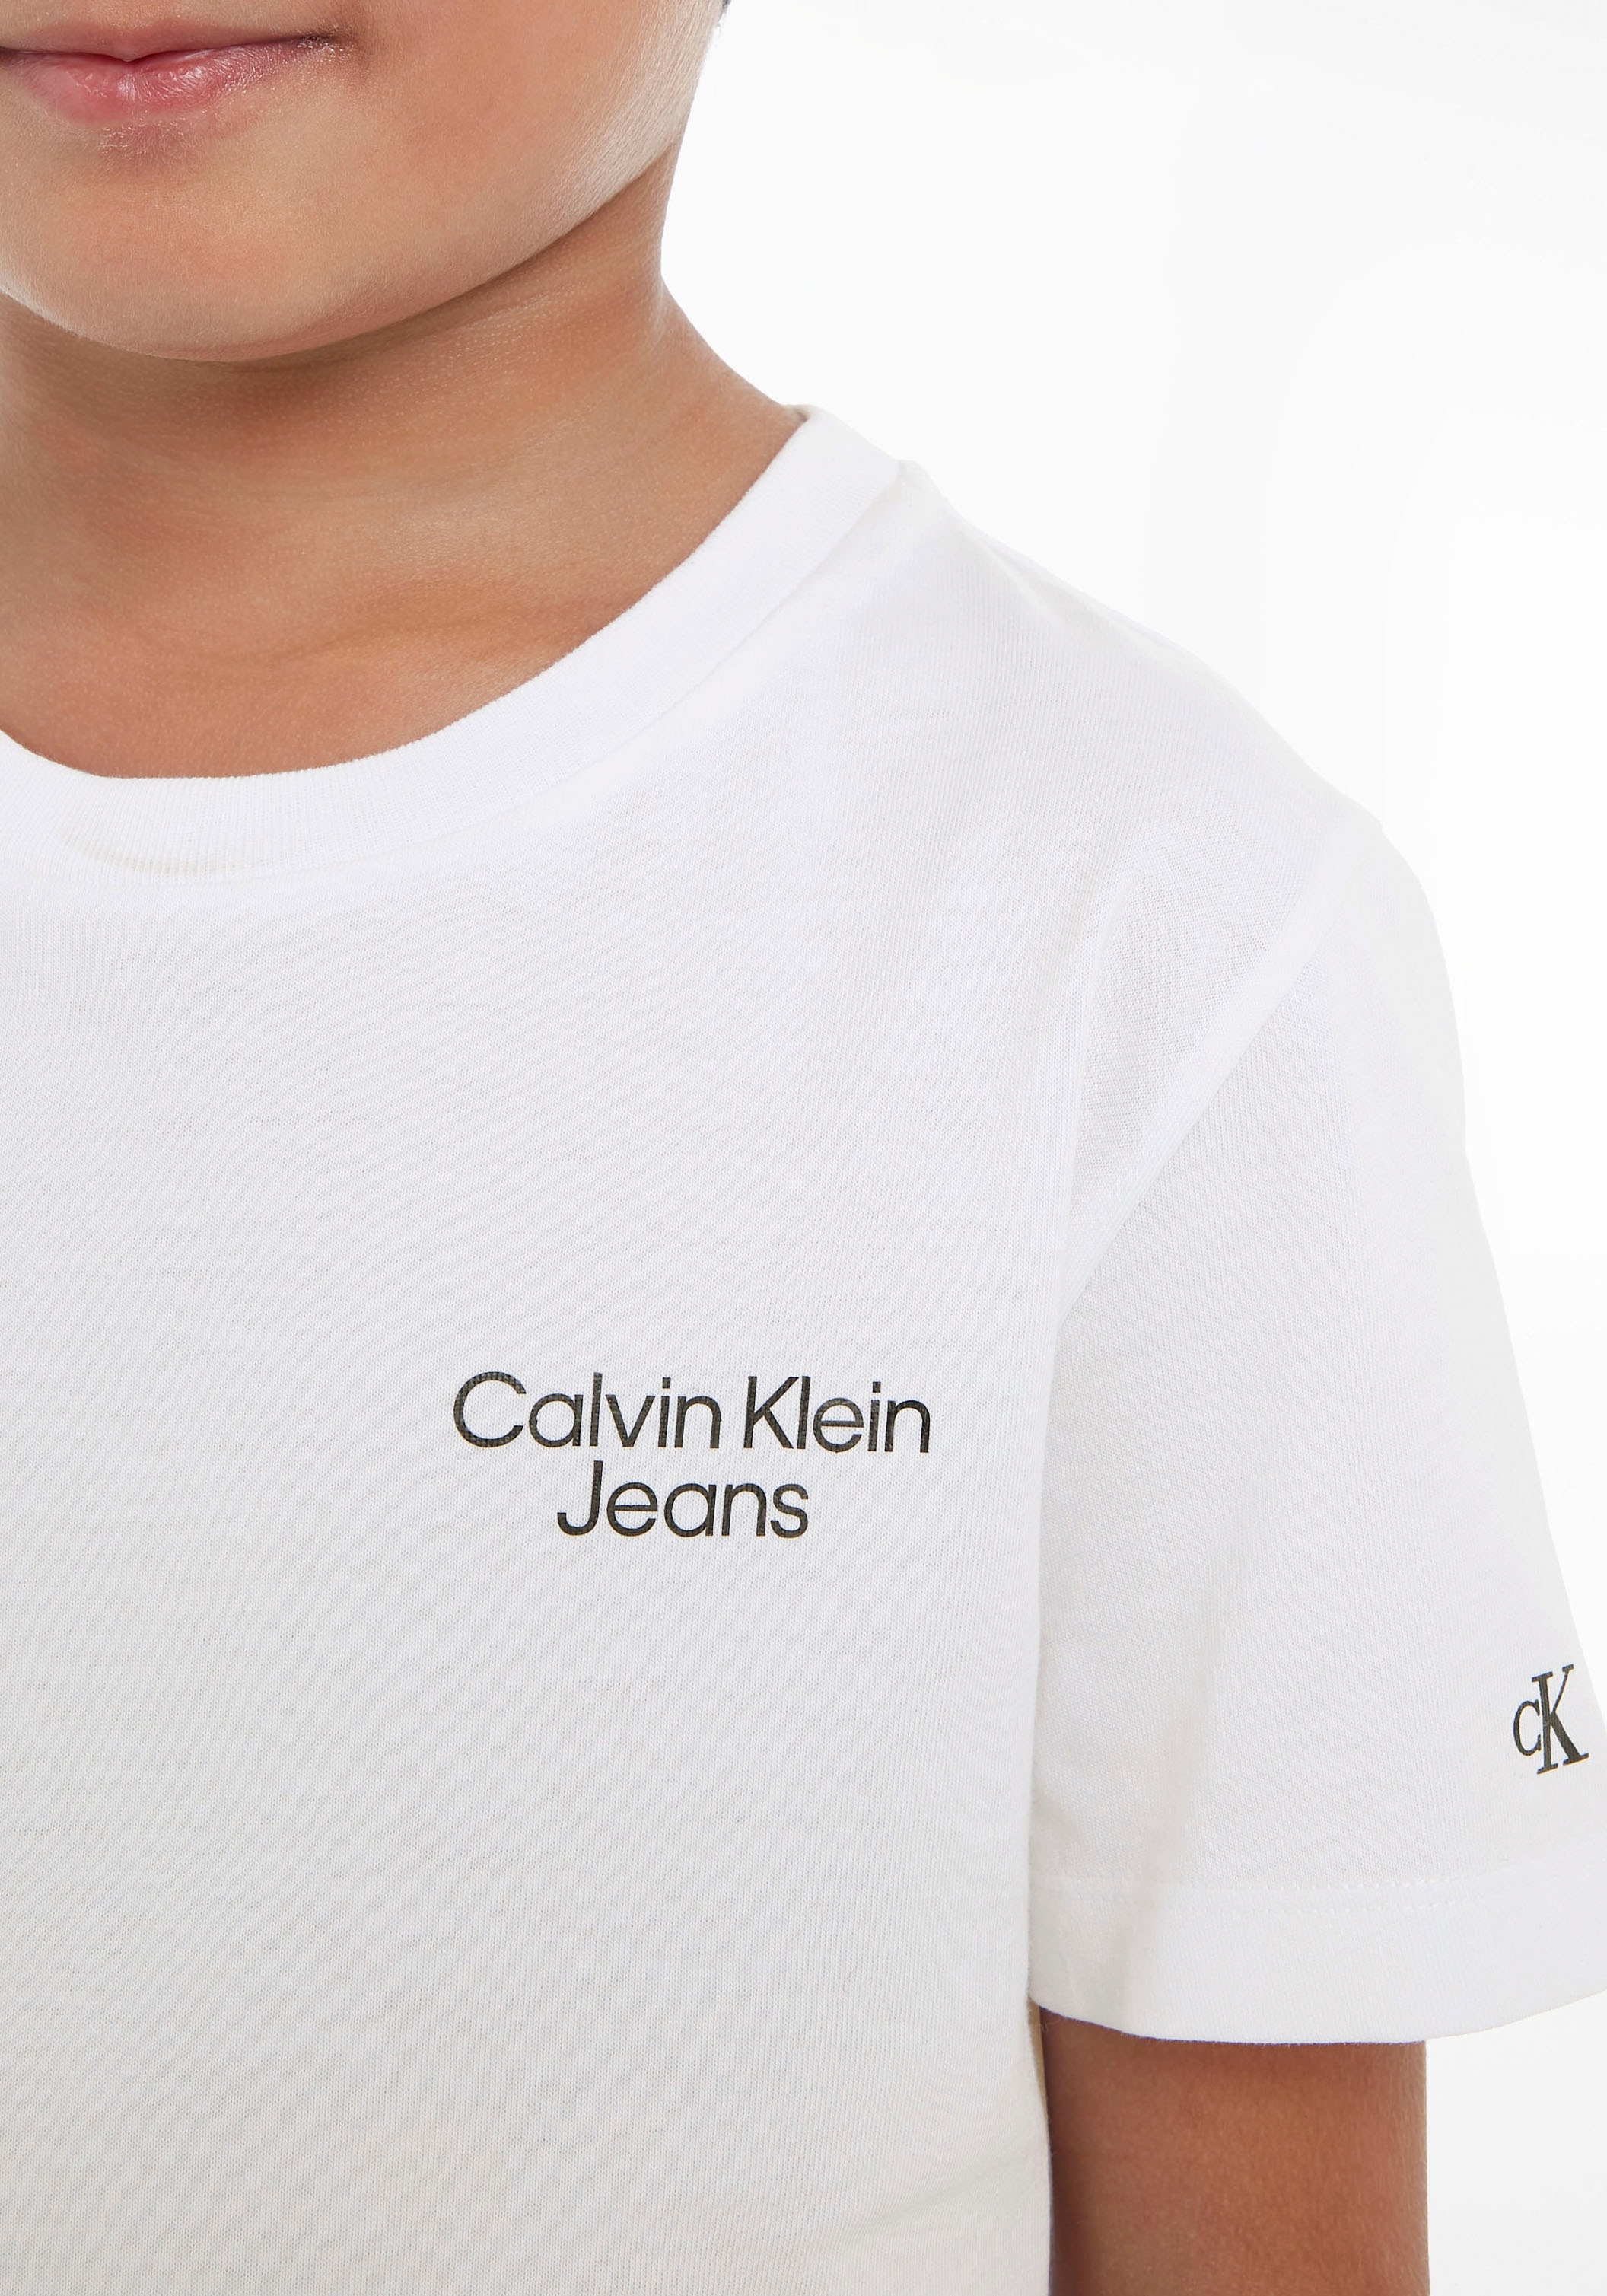 Ärmel auf Brust Klein Calvin Jeans Calvin am kaufen Klein und T-Shirt, Logoschriftzug mit der